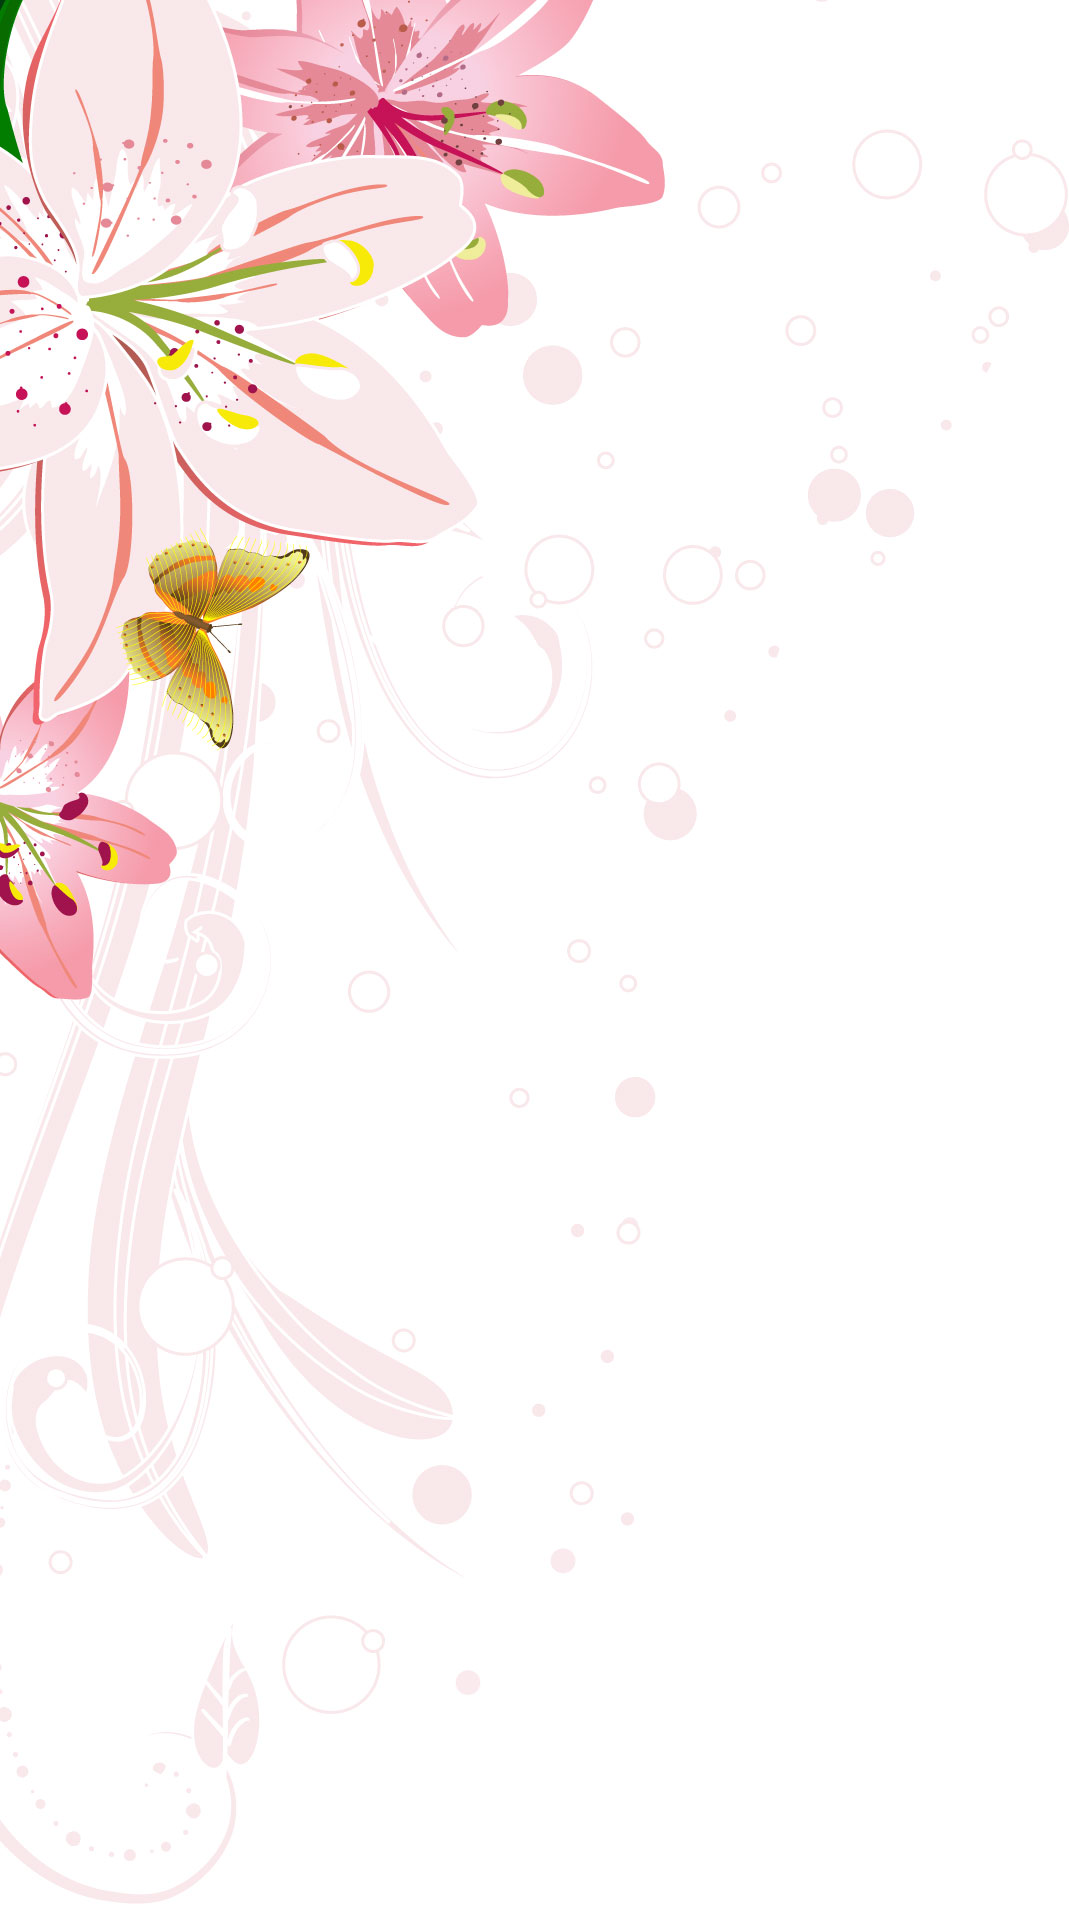 百合 ゆり の花の画像 イラスト フリー素材 No 162 ピンクのユリ 蝶